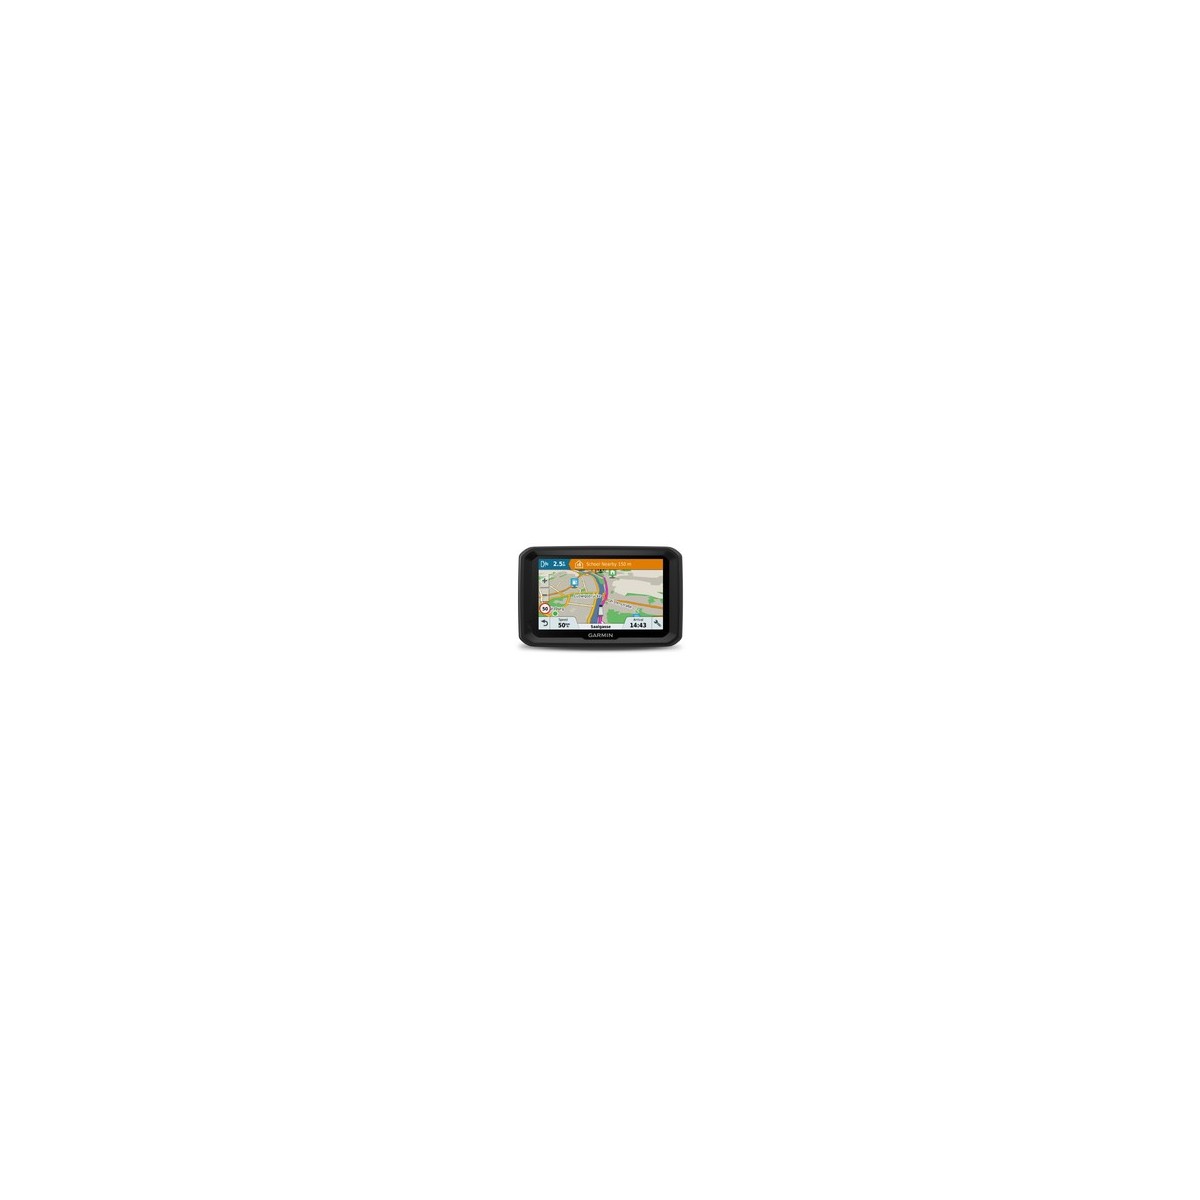 Garmin dzl 580 LMT-D - 12.7 cm (5) - 480 x 272 pixels - TFT - Flash - MicroSD (TransFlash) - 16 GB